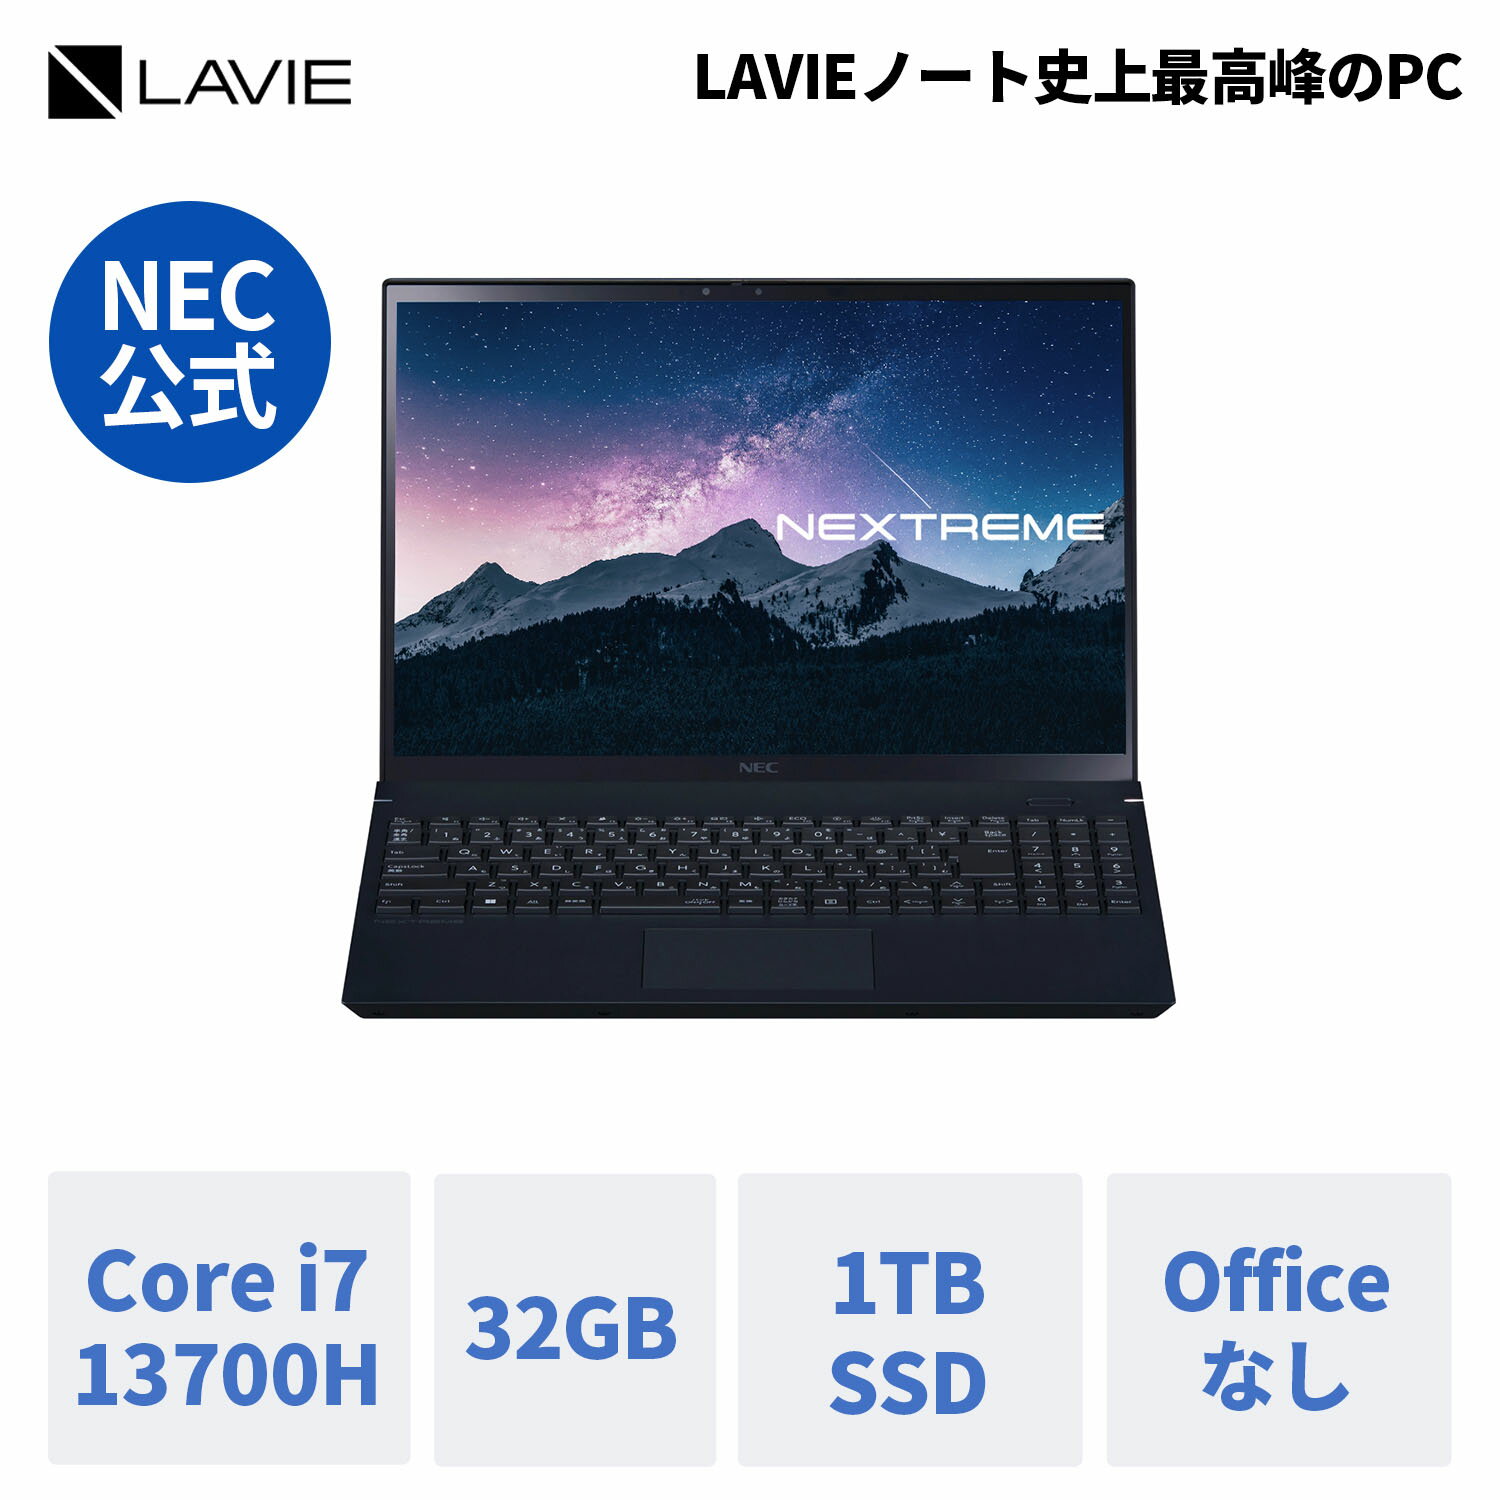  新品 NEC ノートパソコン officeなし LAVIE NEXTREME Infinity 16.0インチ Windows 11 Home Core i7 メモリ 32GB 1TB SSD 1年保証 送料無料 yxe